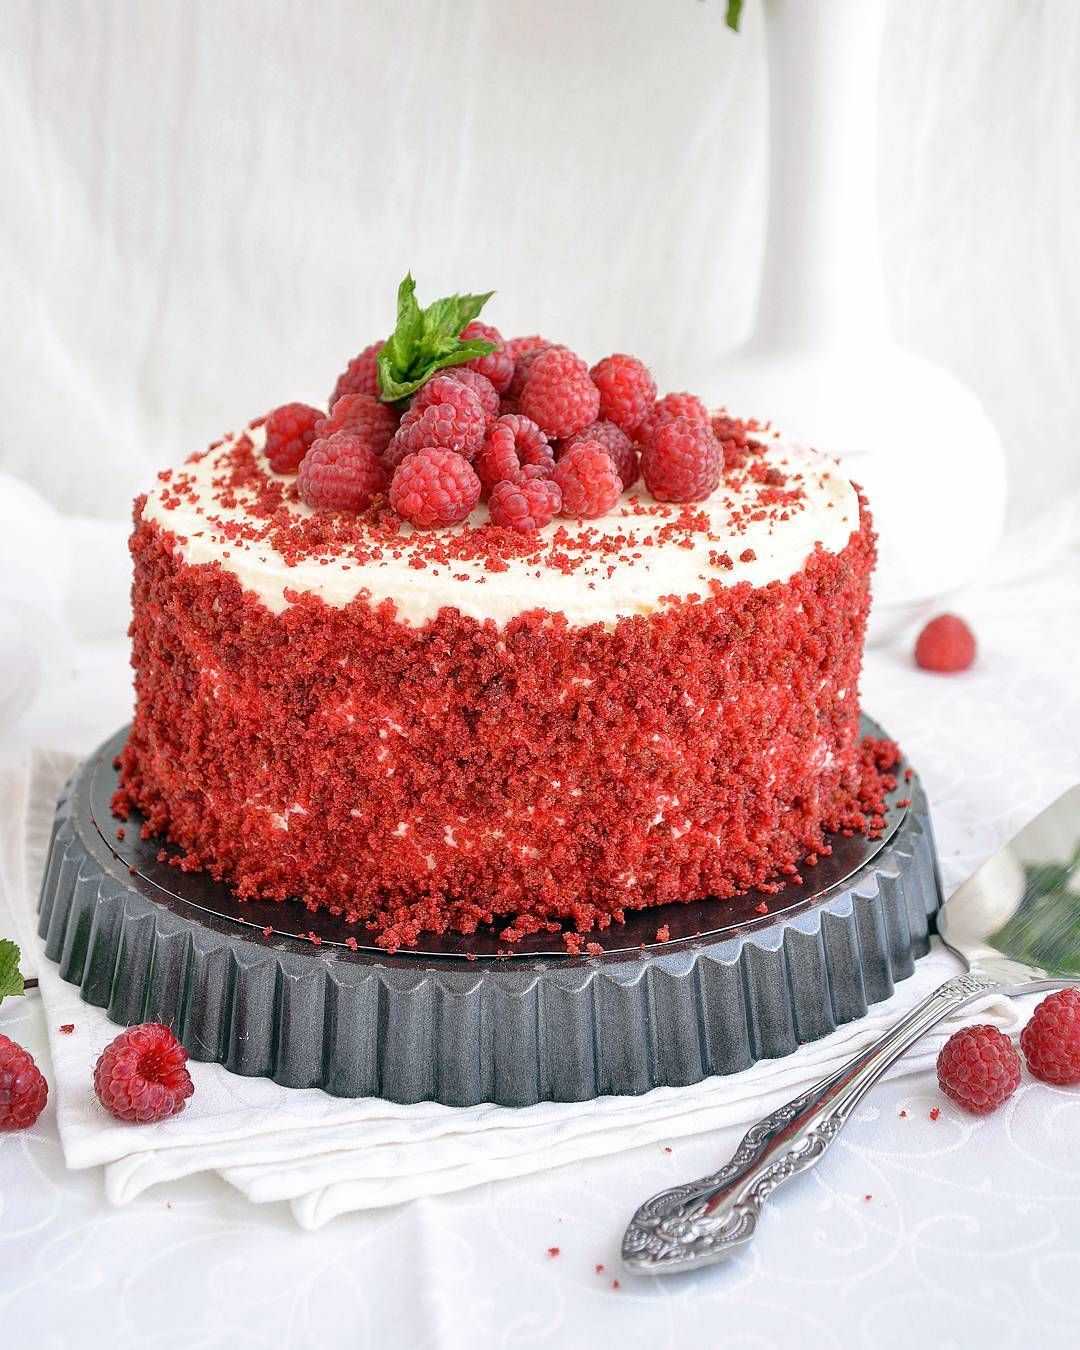 Красный бархат - торт: рецепт с фото пошагово в домашних условиях